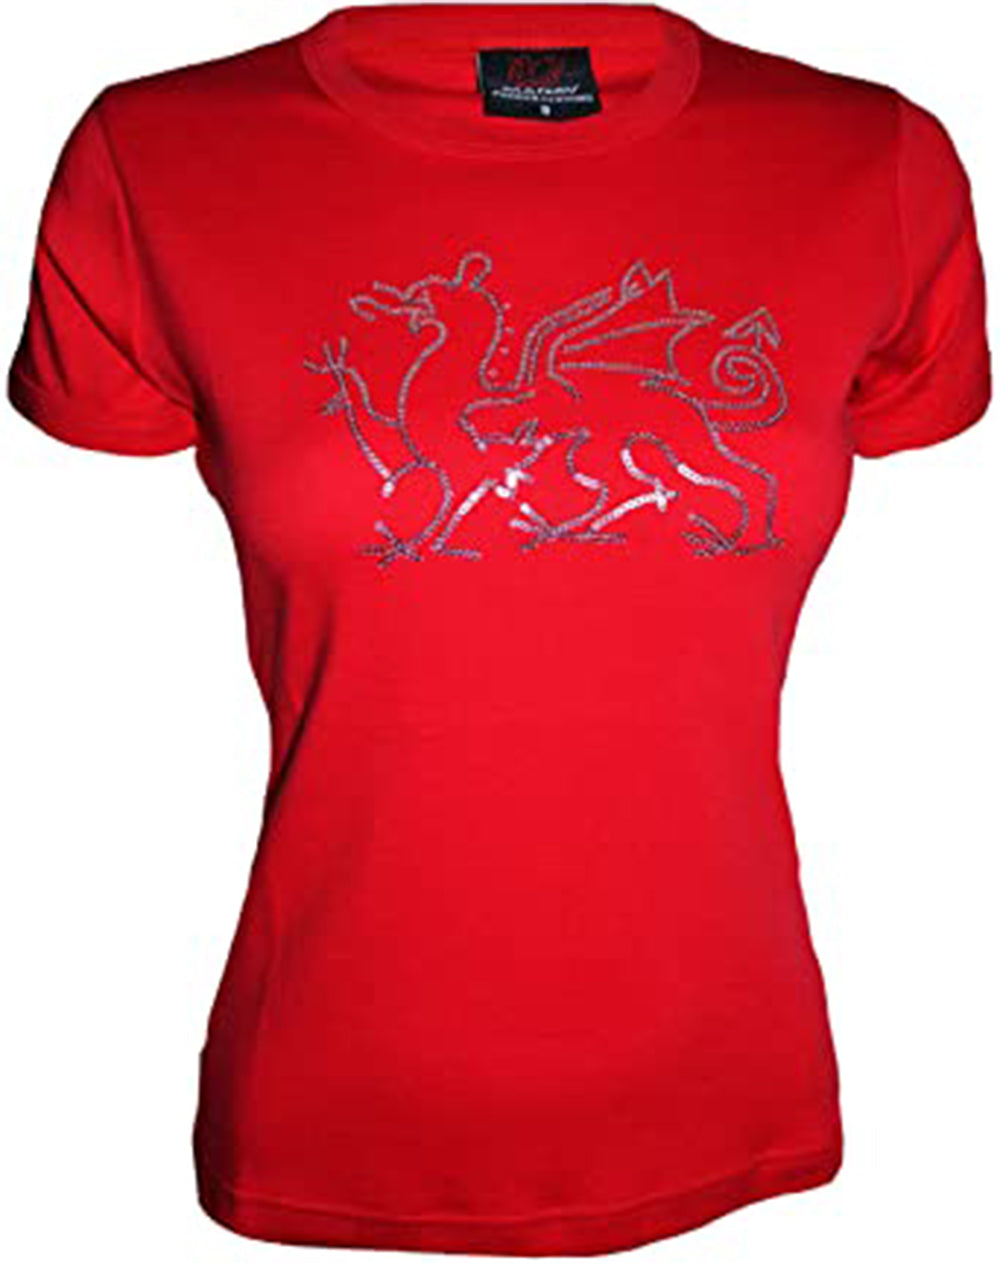 Women's Sequin Welsh Dragon T Shirt Top - in Red